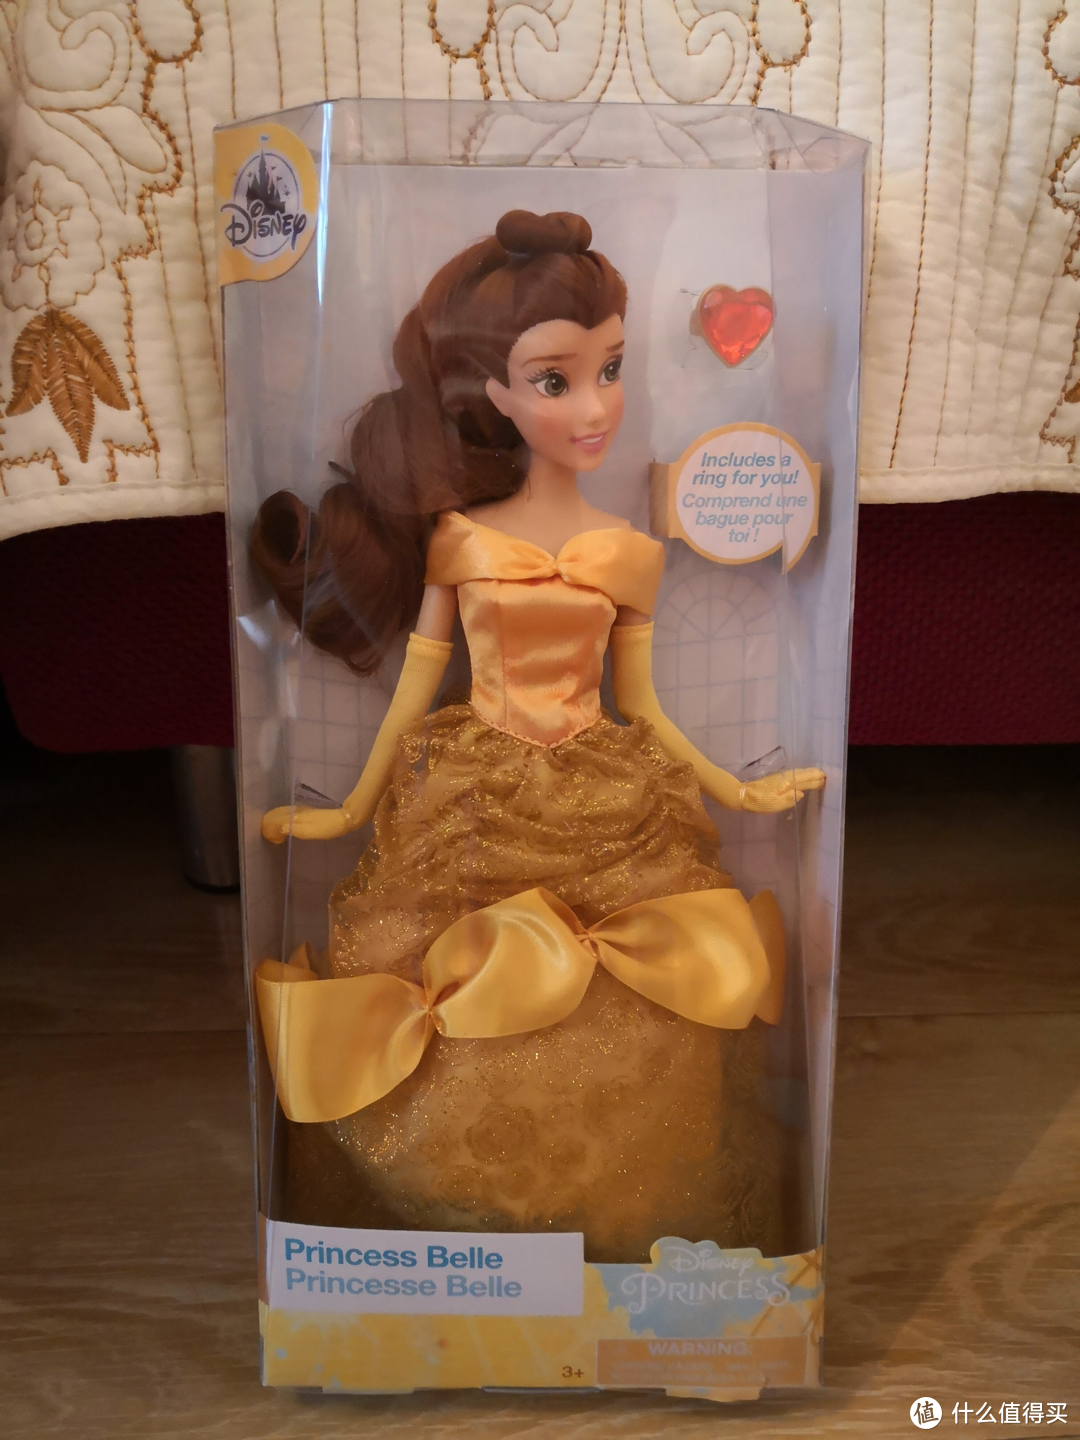 芭比一堆，迪士尼公主却有点少，晒闺女的生日礼物Disney公主贝儿